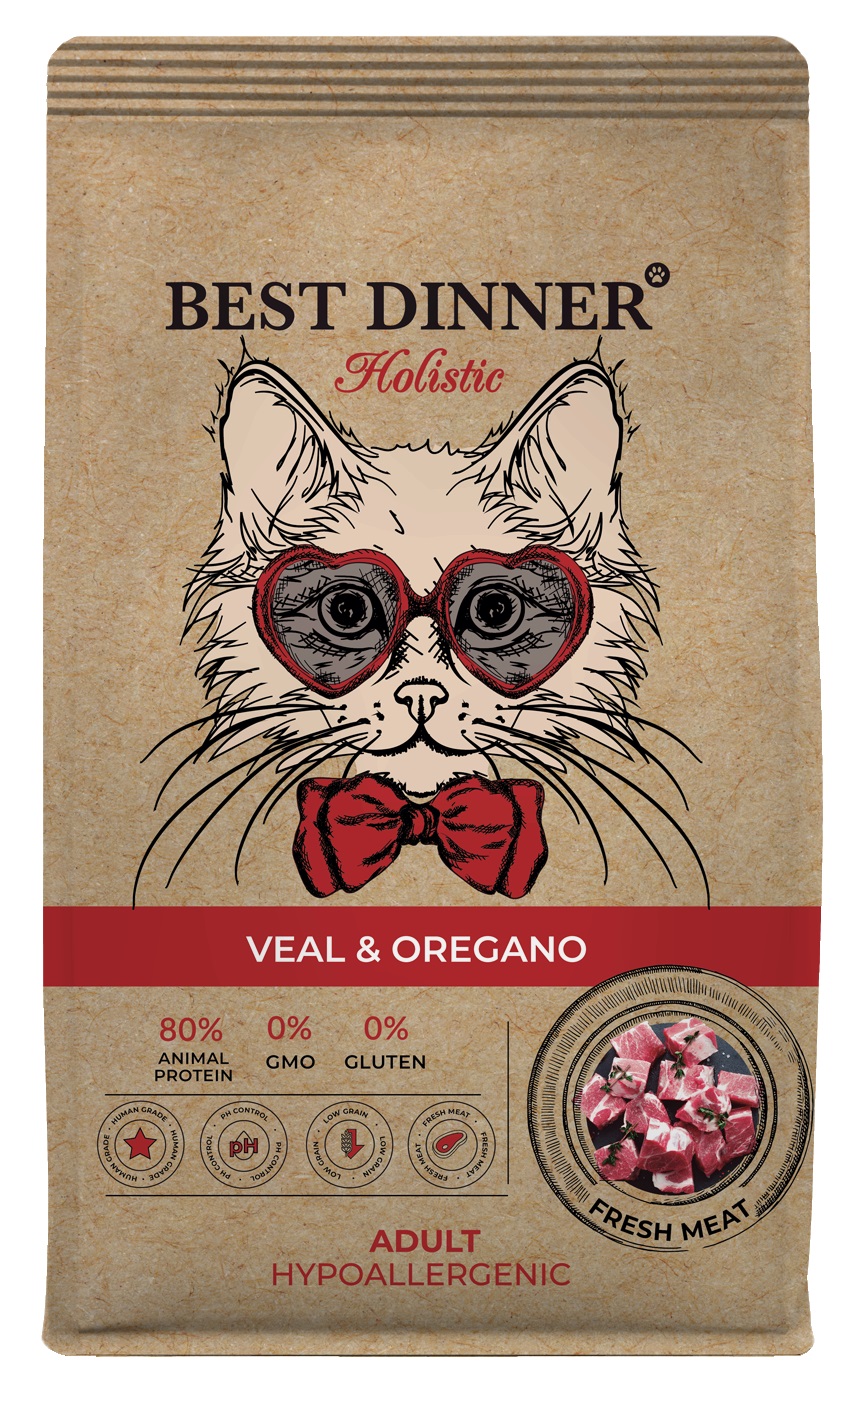 Корм Best Dinner Holistic Hypo Adult Cat Veal & Oregano для кошек гипоаллергенный с телятиной и орегано